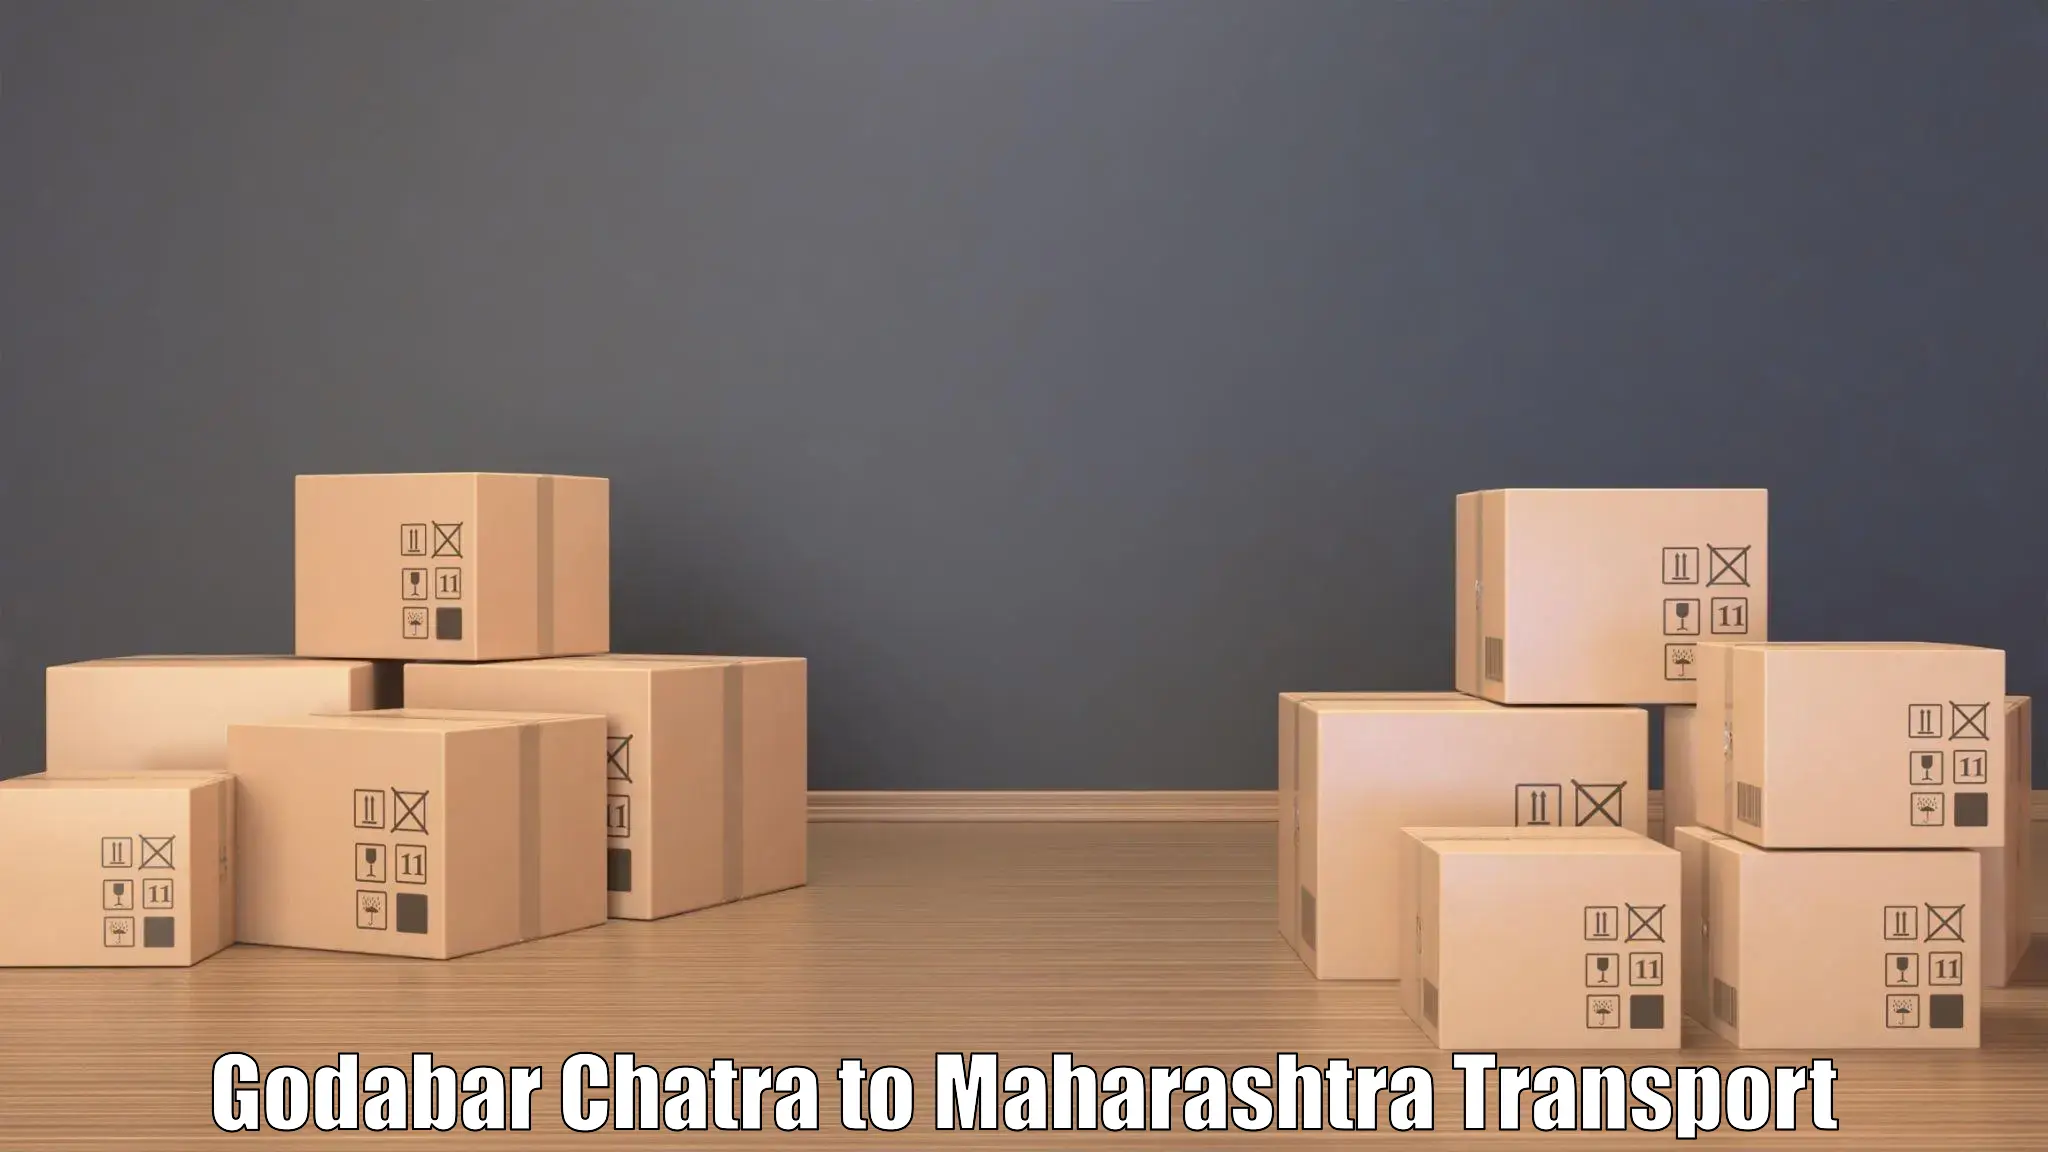 All India transport service Godabar Chatra to Mahim